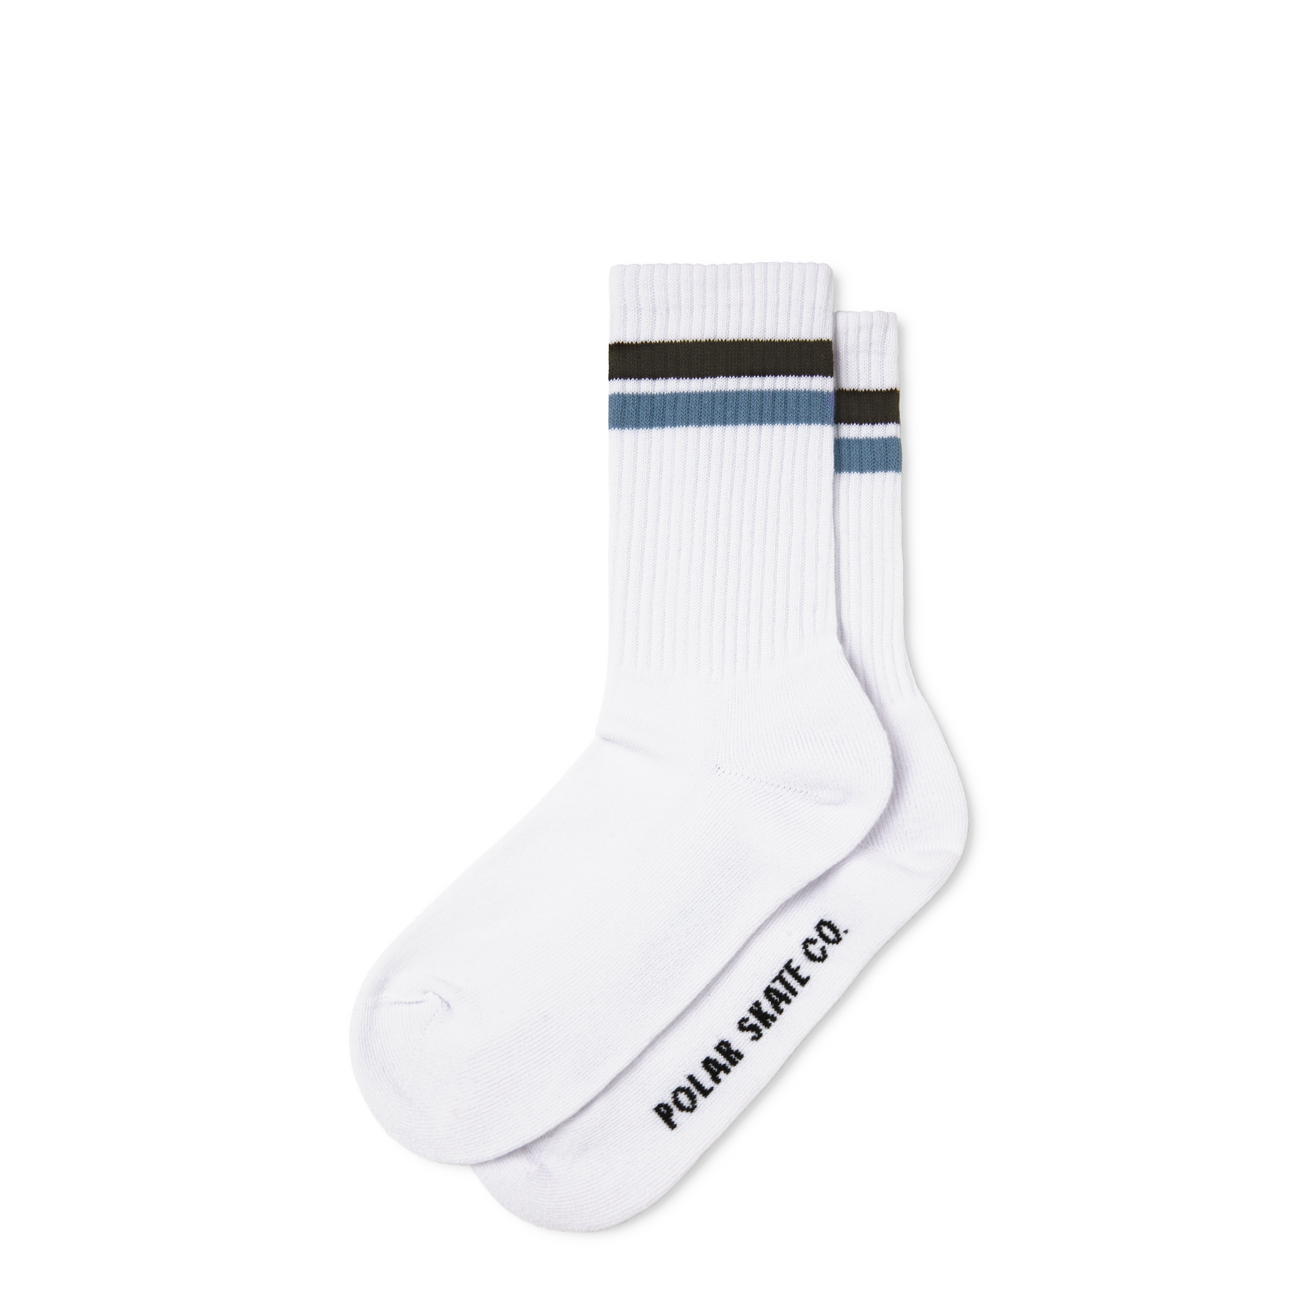 Polar Skate Co. Stripe Socks (White/Brown/Blue) - Apple Valley Emporium